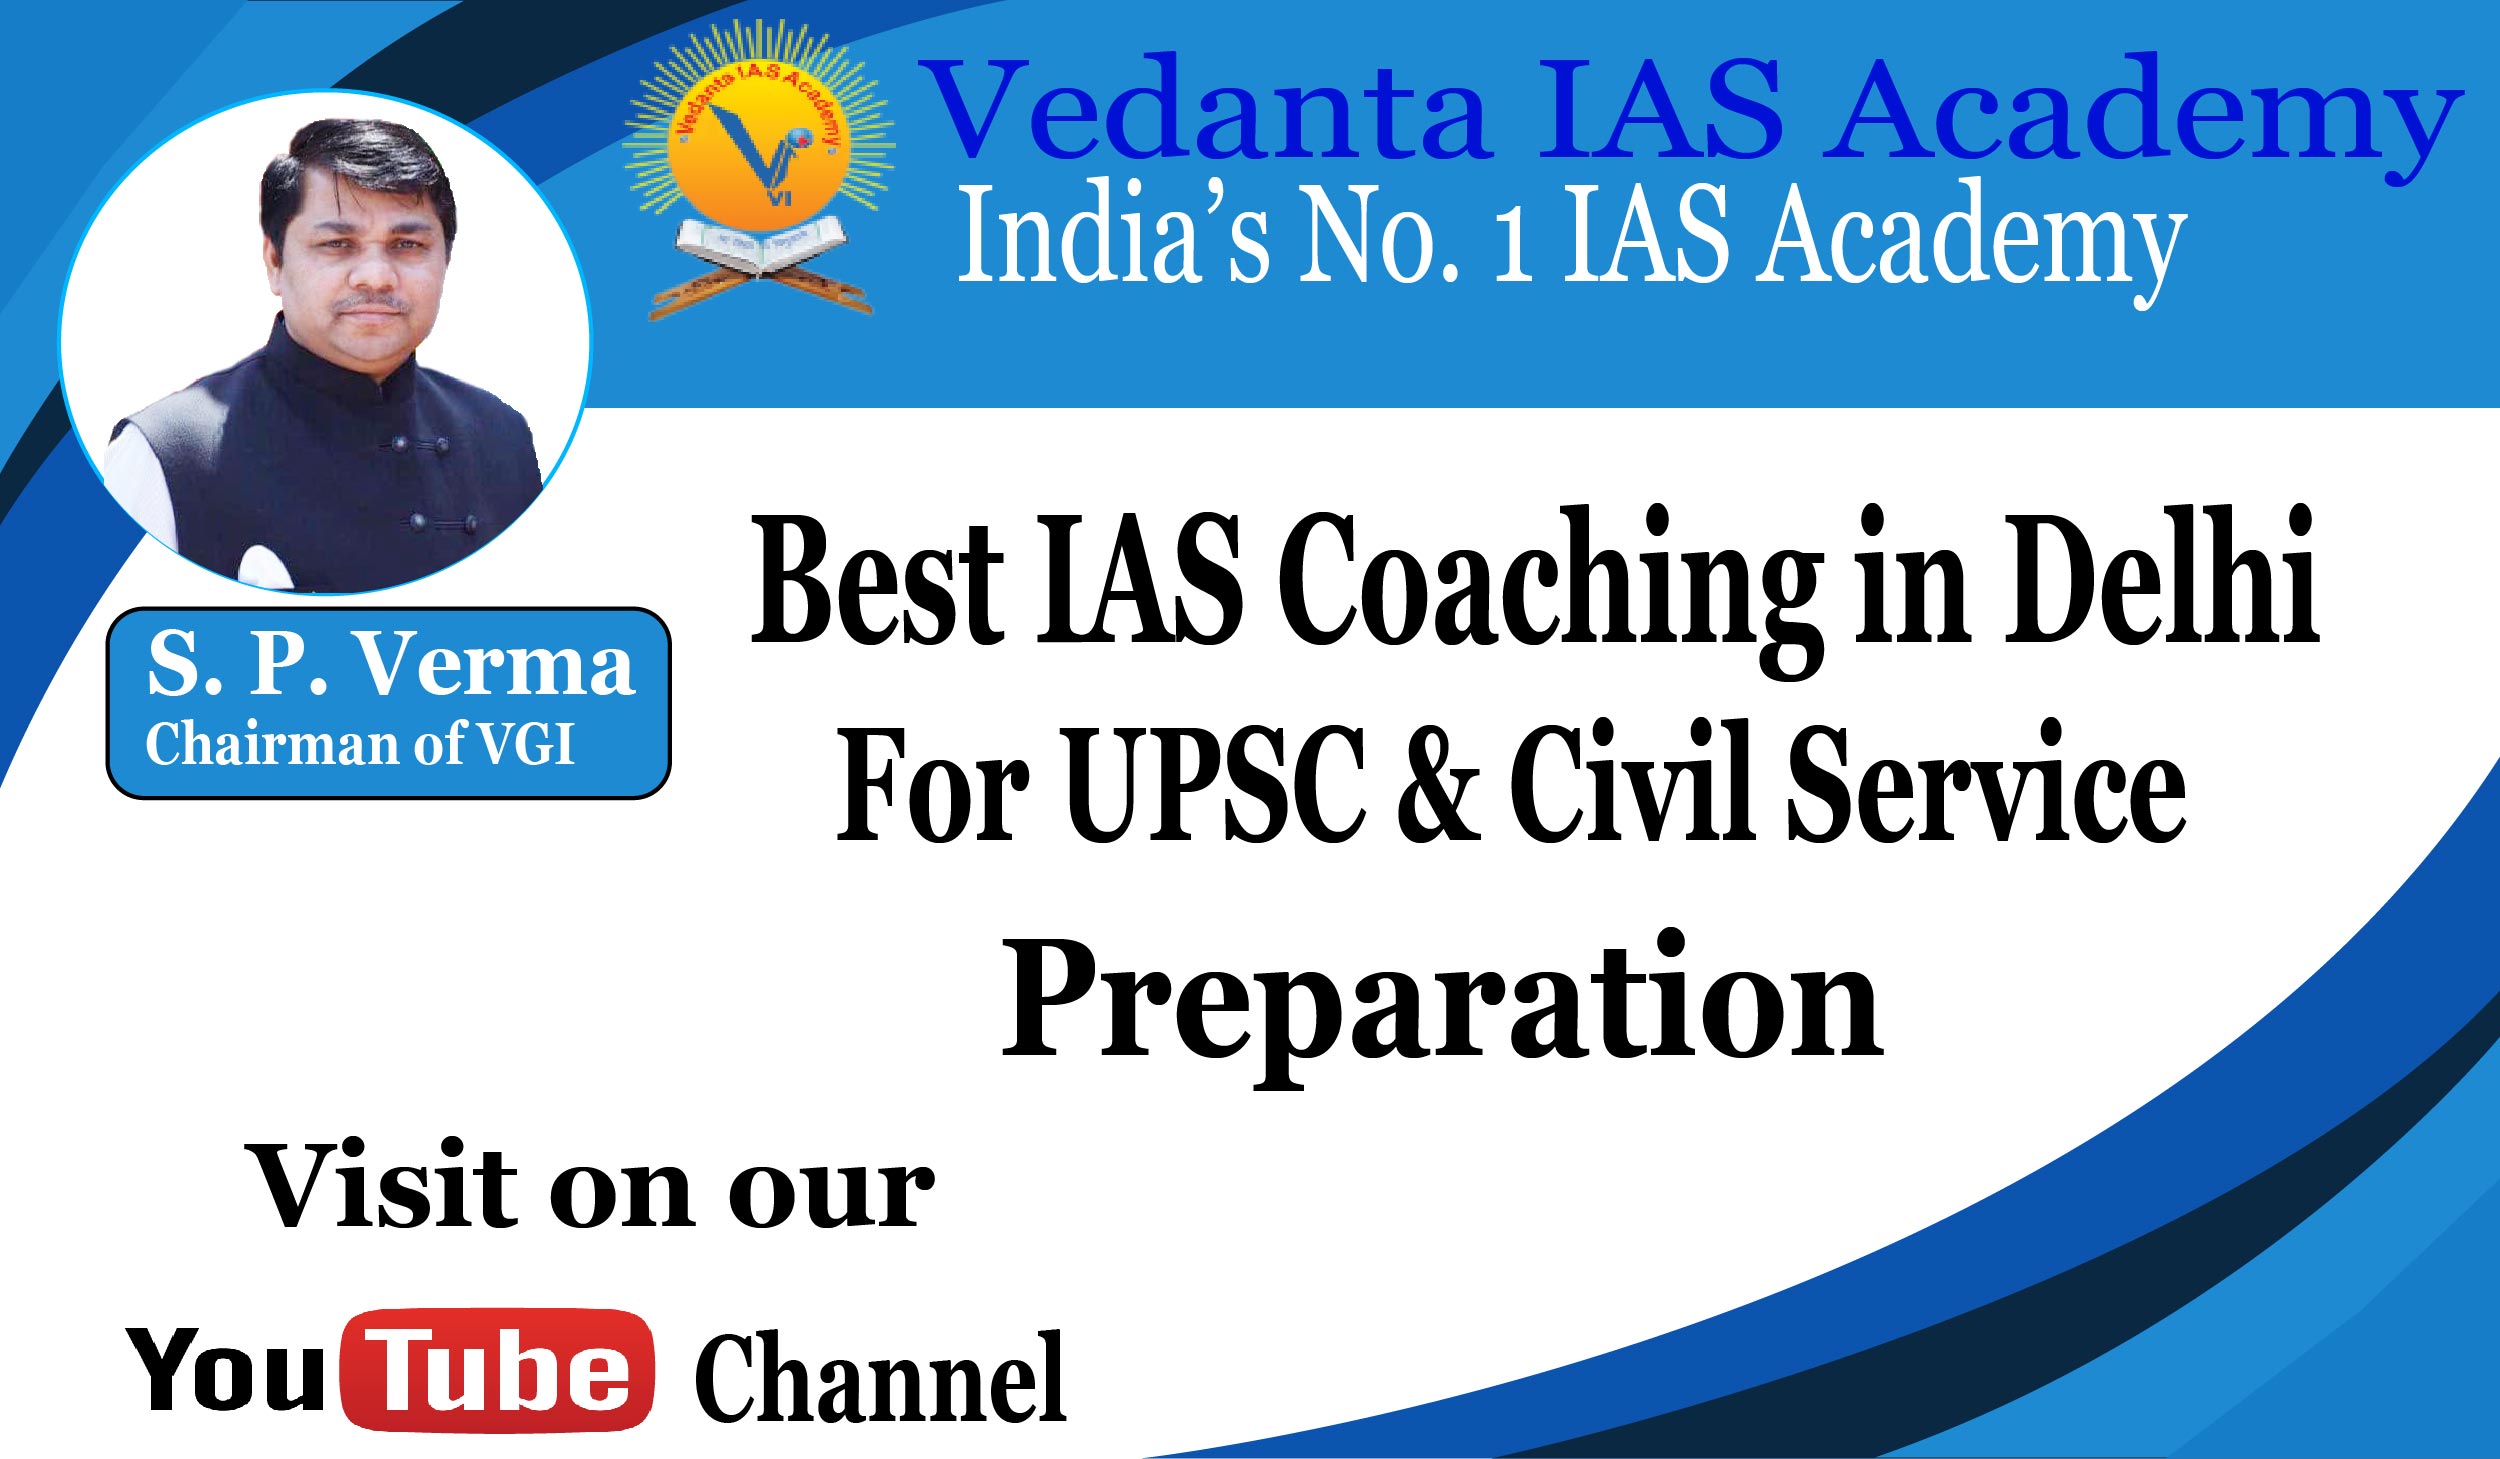 Venta IAS Academy